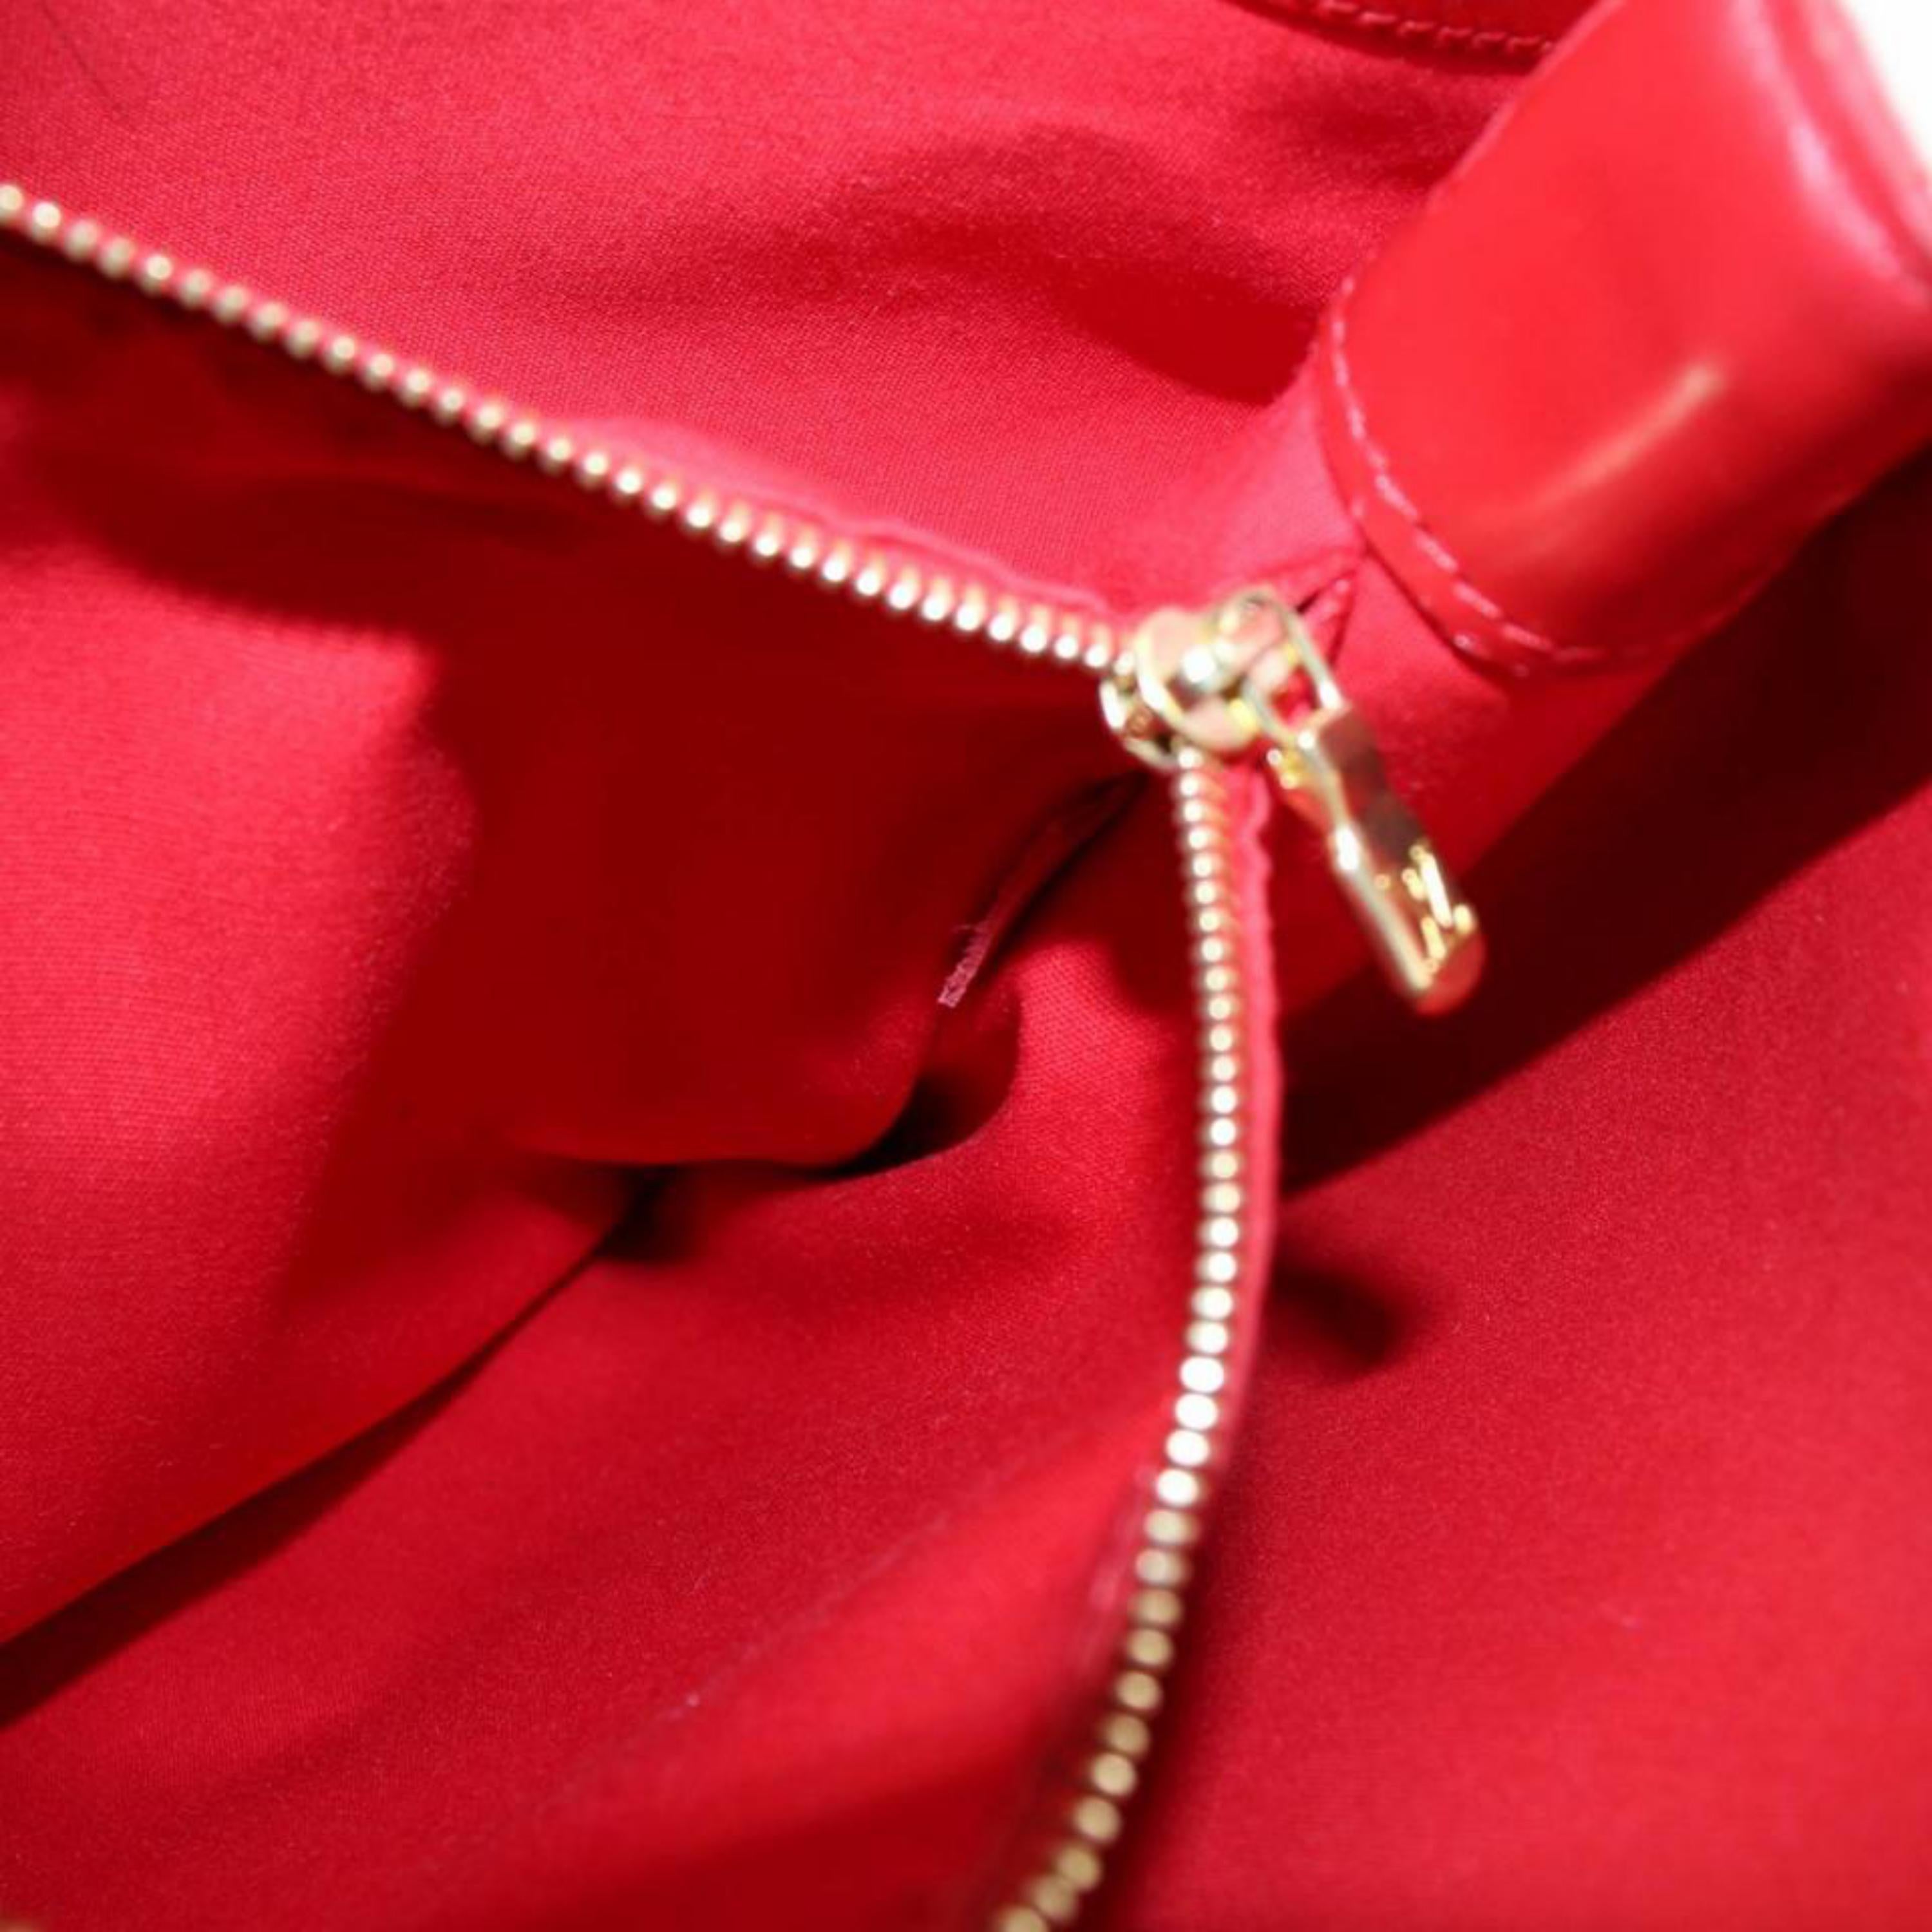 Louis Vuitton Mandara Epi Mm Hobo 868362 Red Leather Shoulder Bag For Sale 6